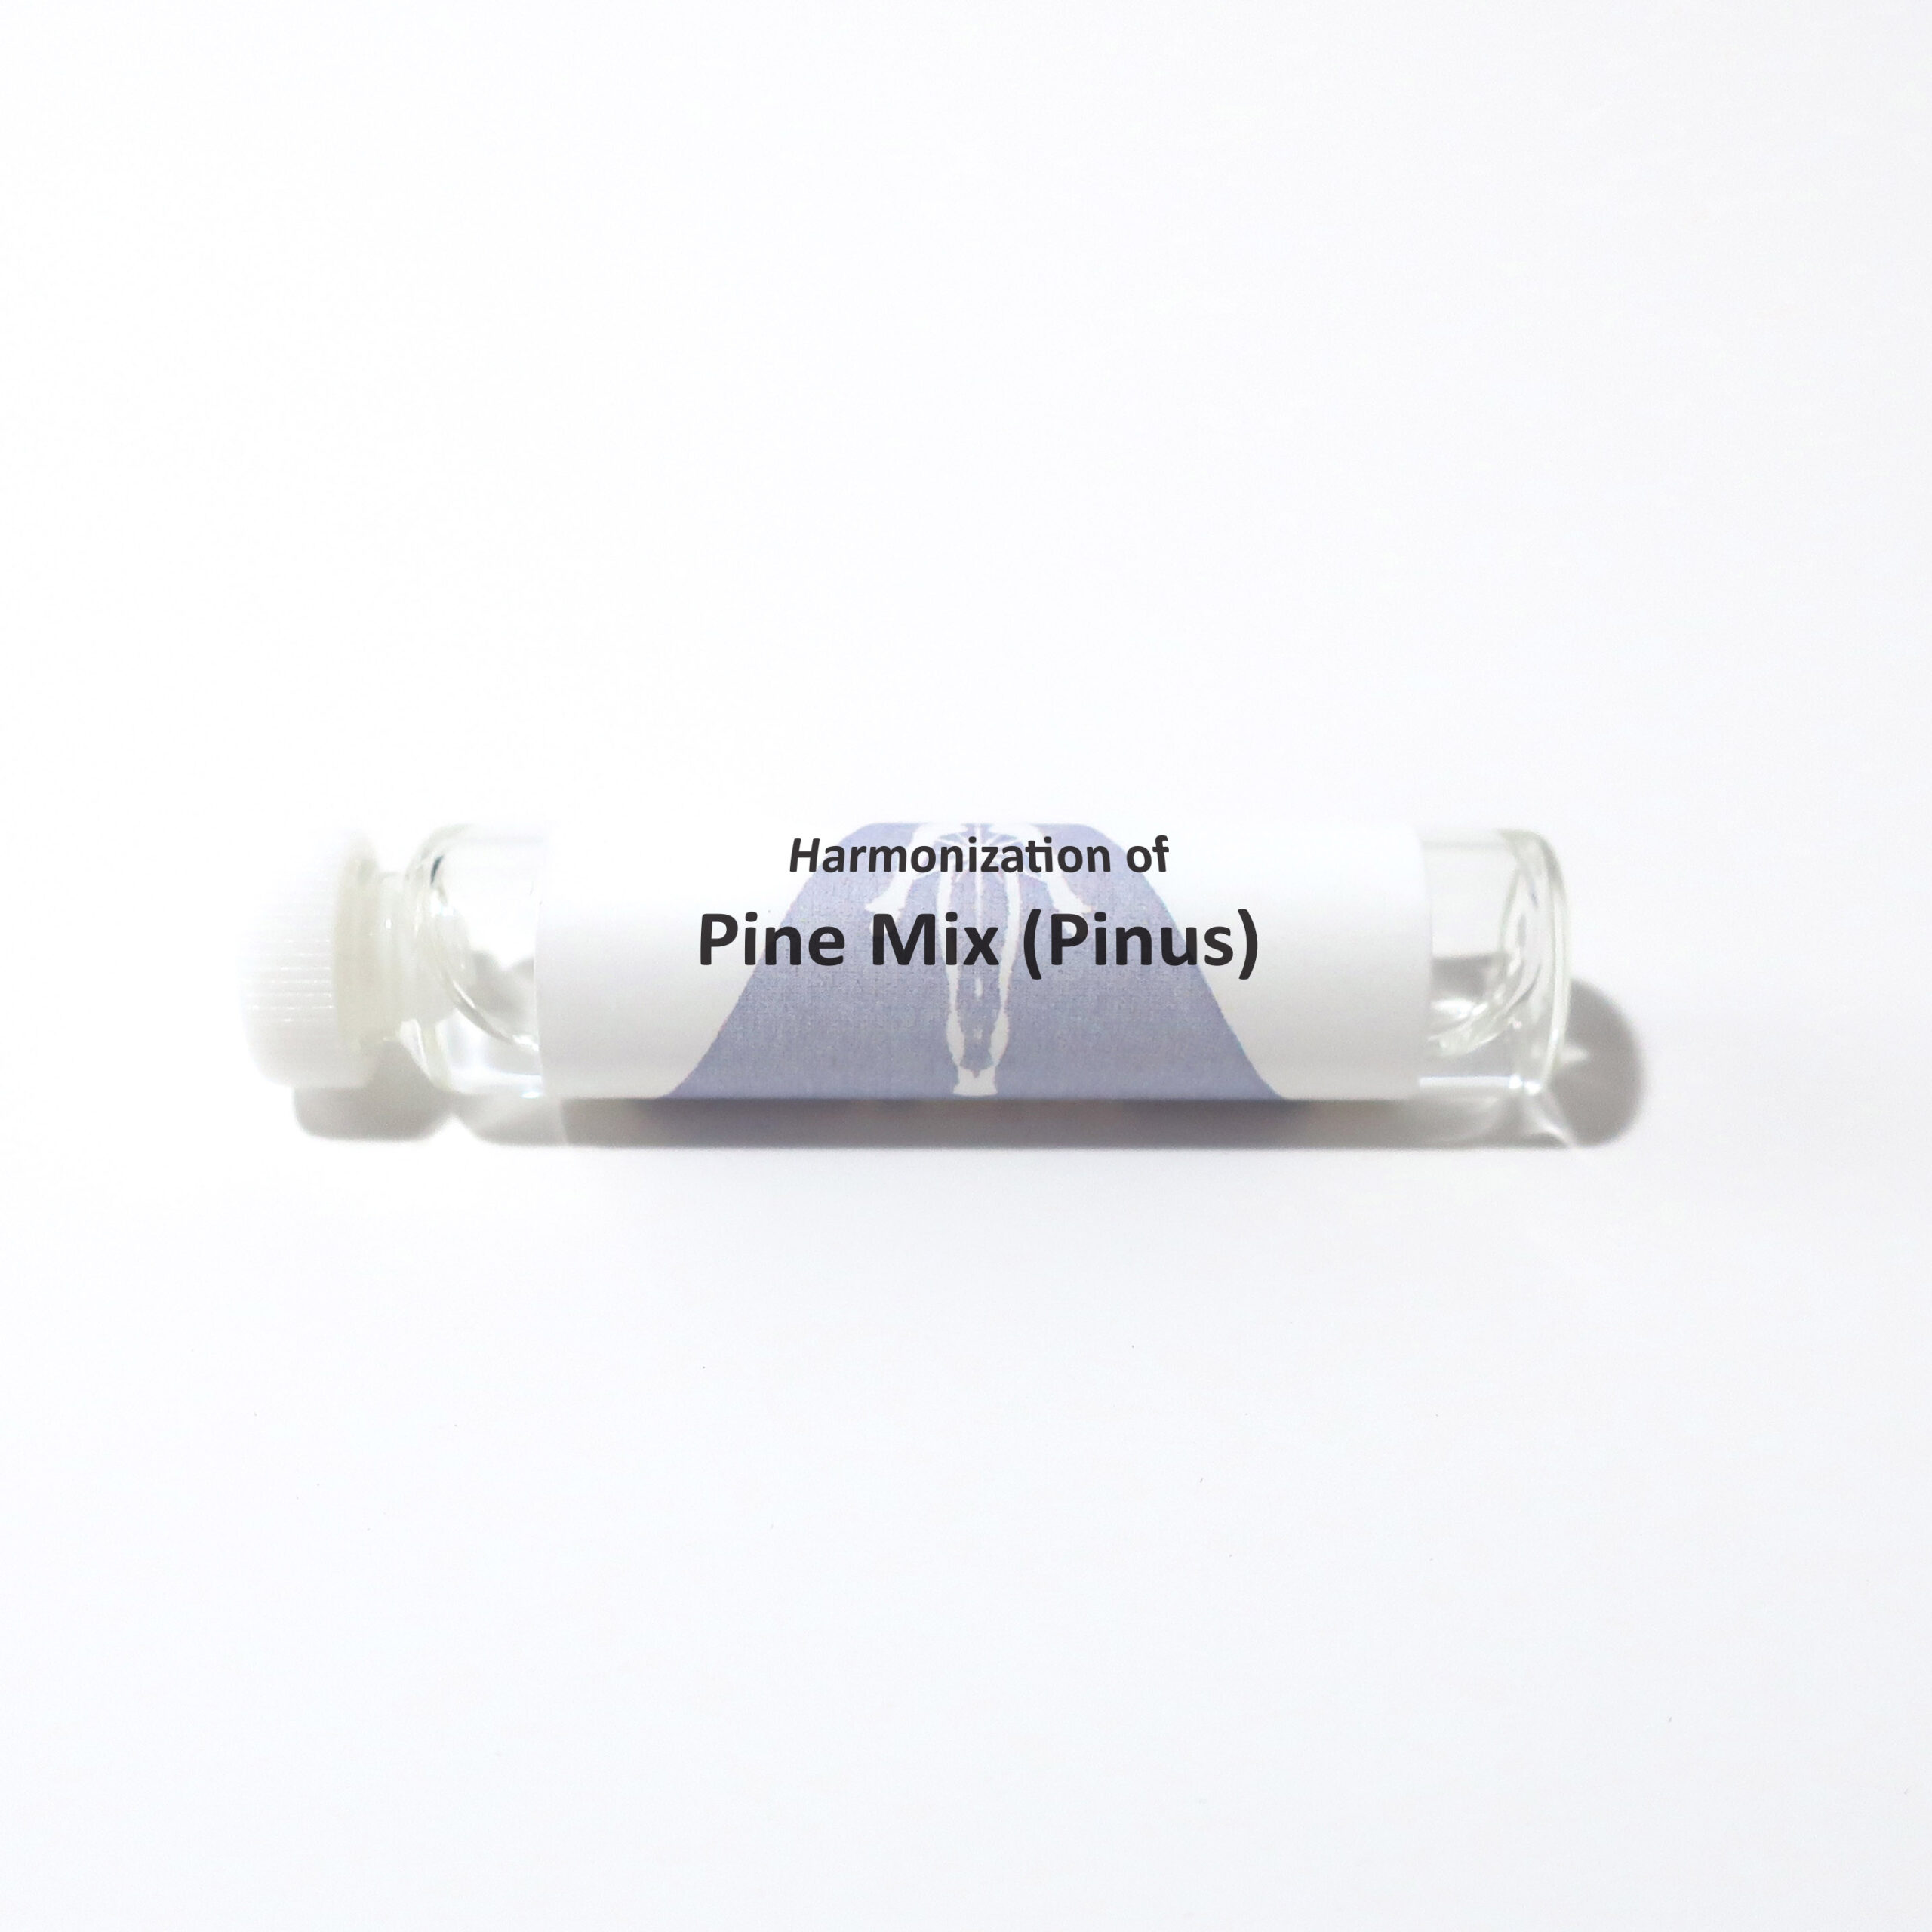 Pine Mix (Pinus)